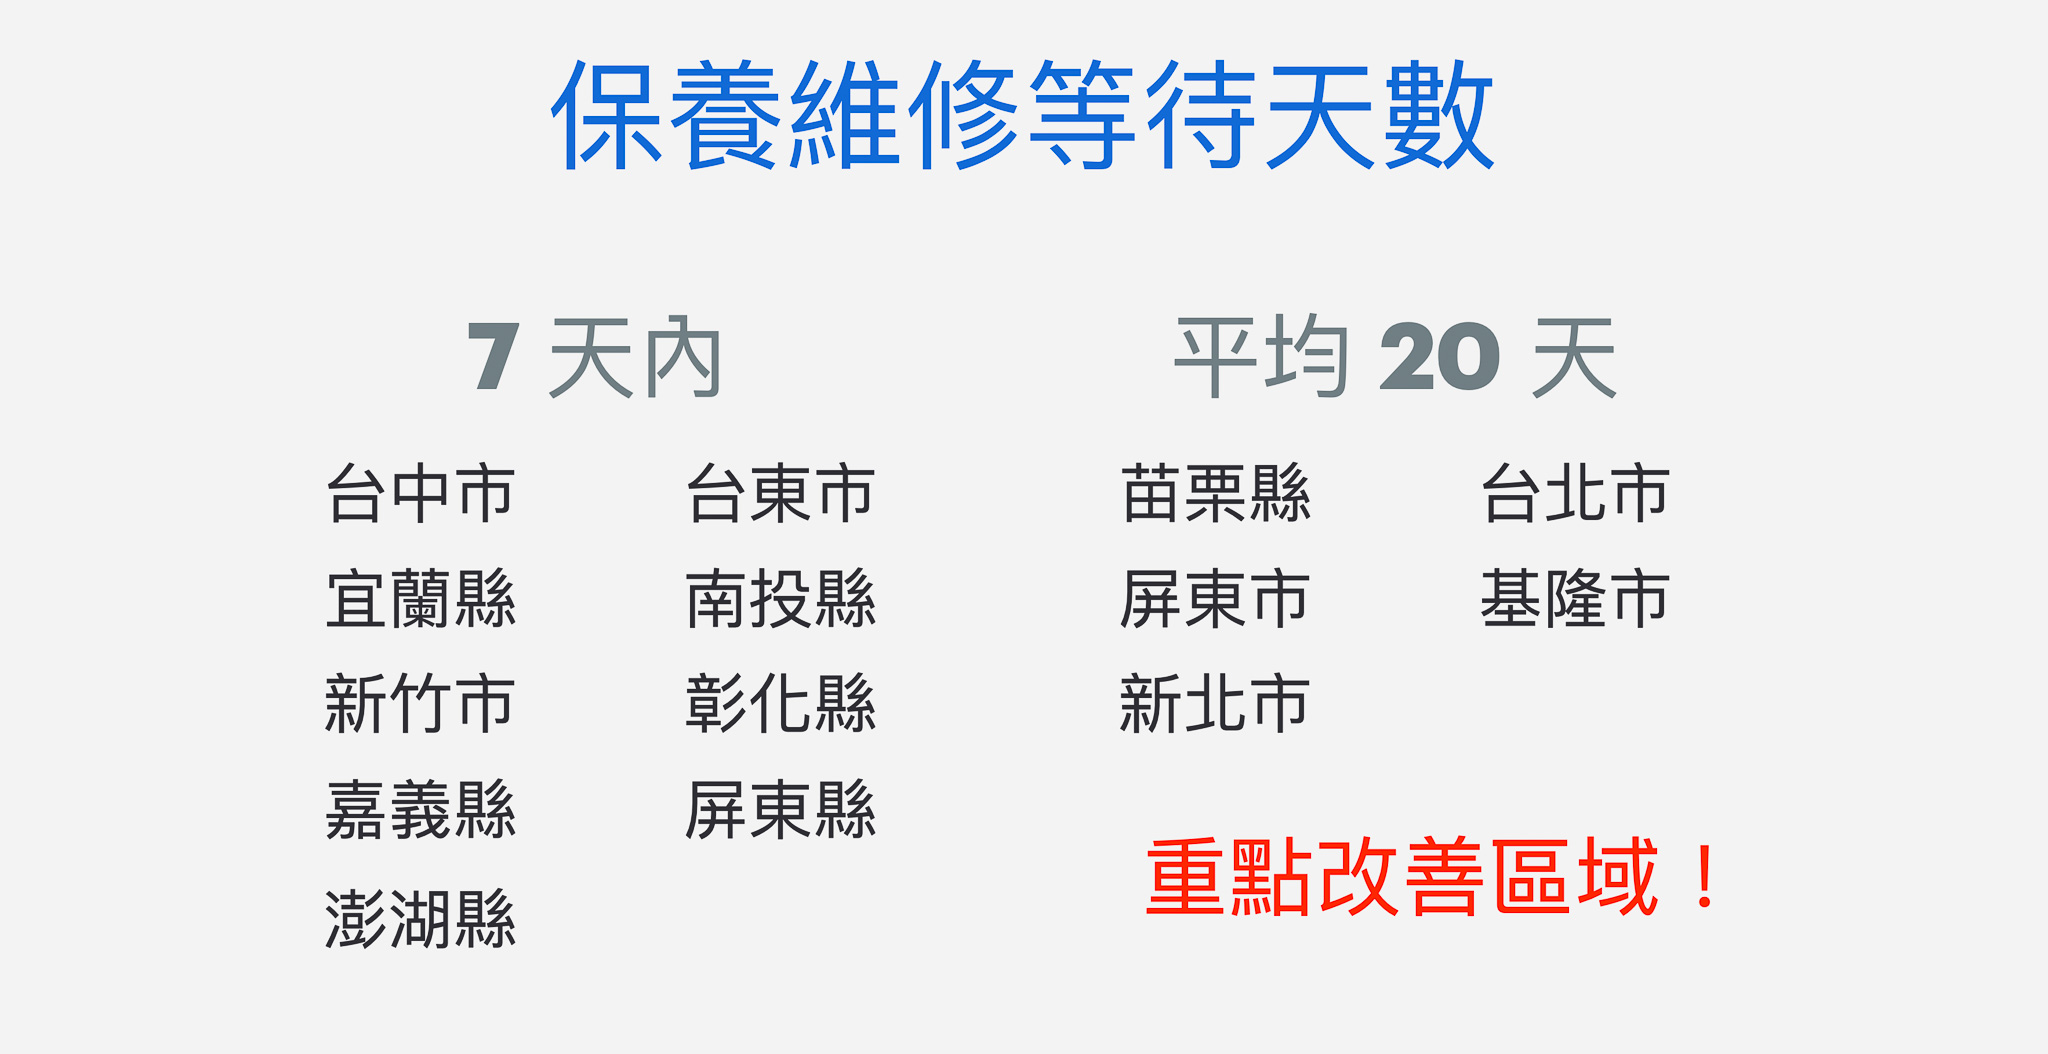 如圖所述，台北市、新北市等地區仍需要平均 20 天的申請維修保養服務等待天數。